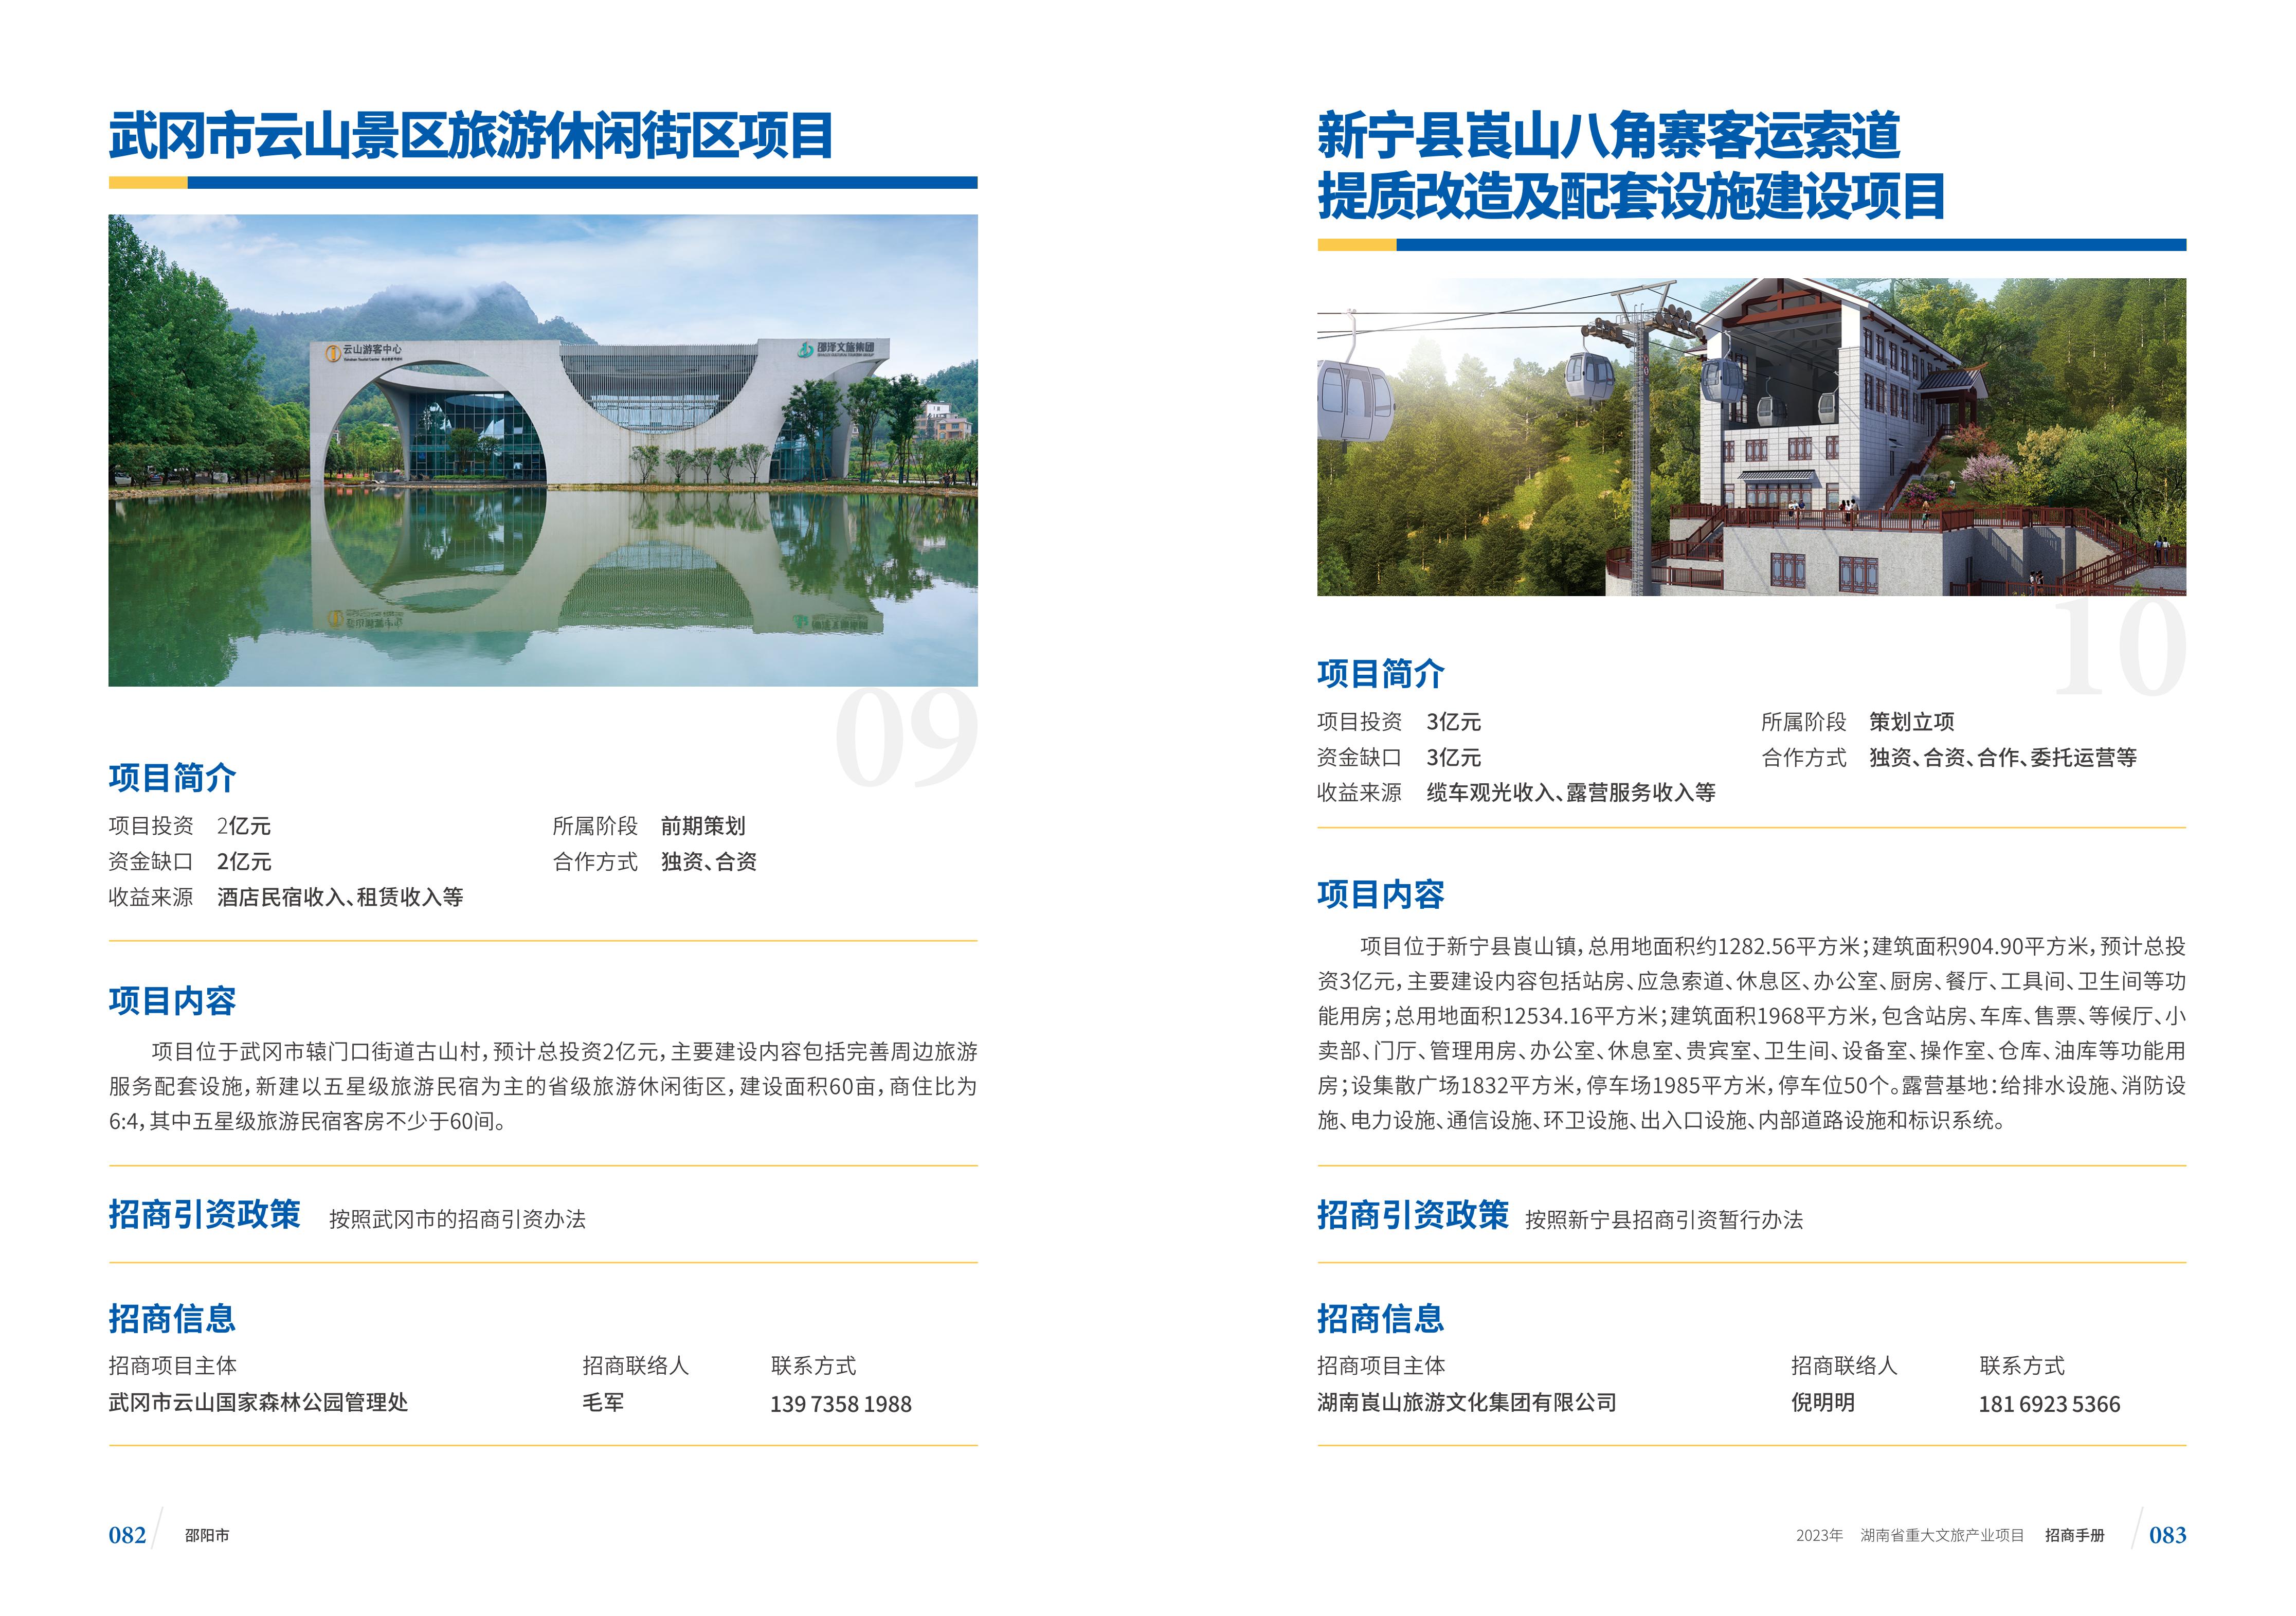 湖南省重大文旅产业项目招手册线上链接版_49.jpg